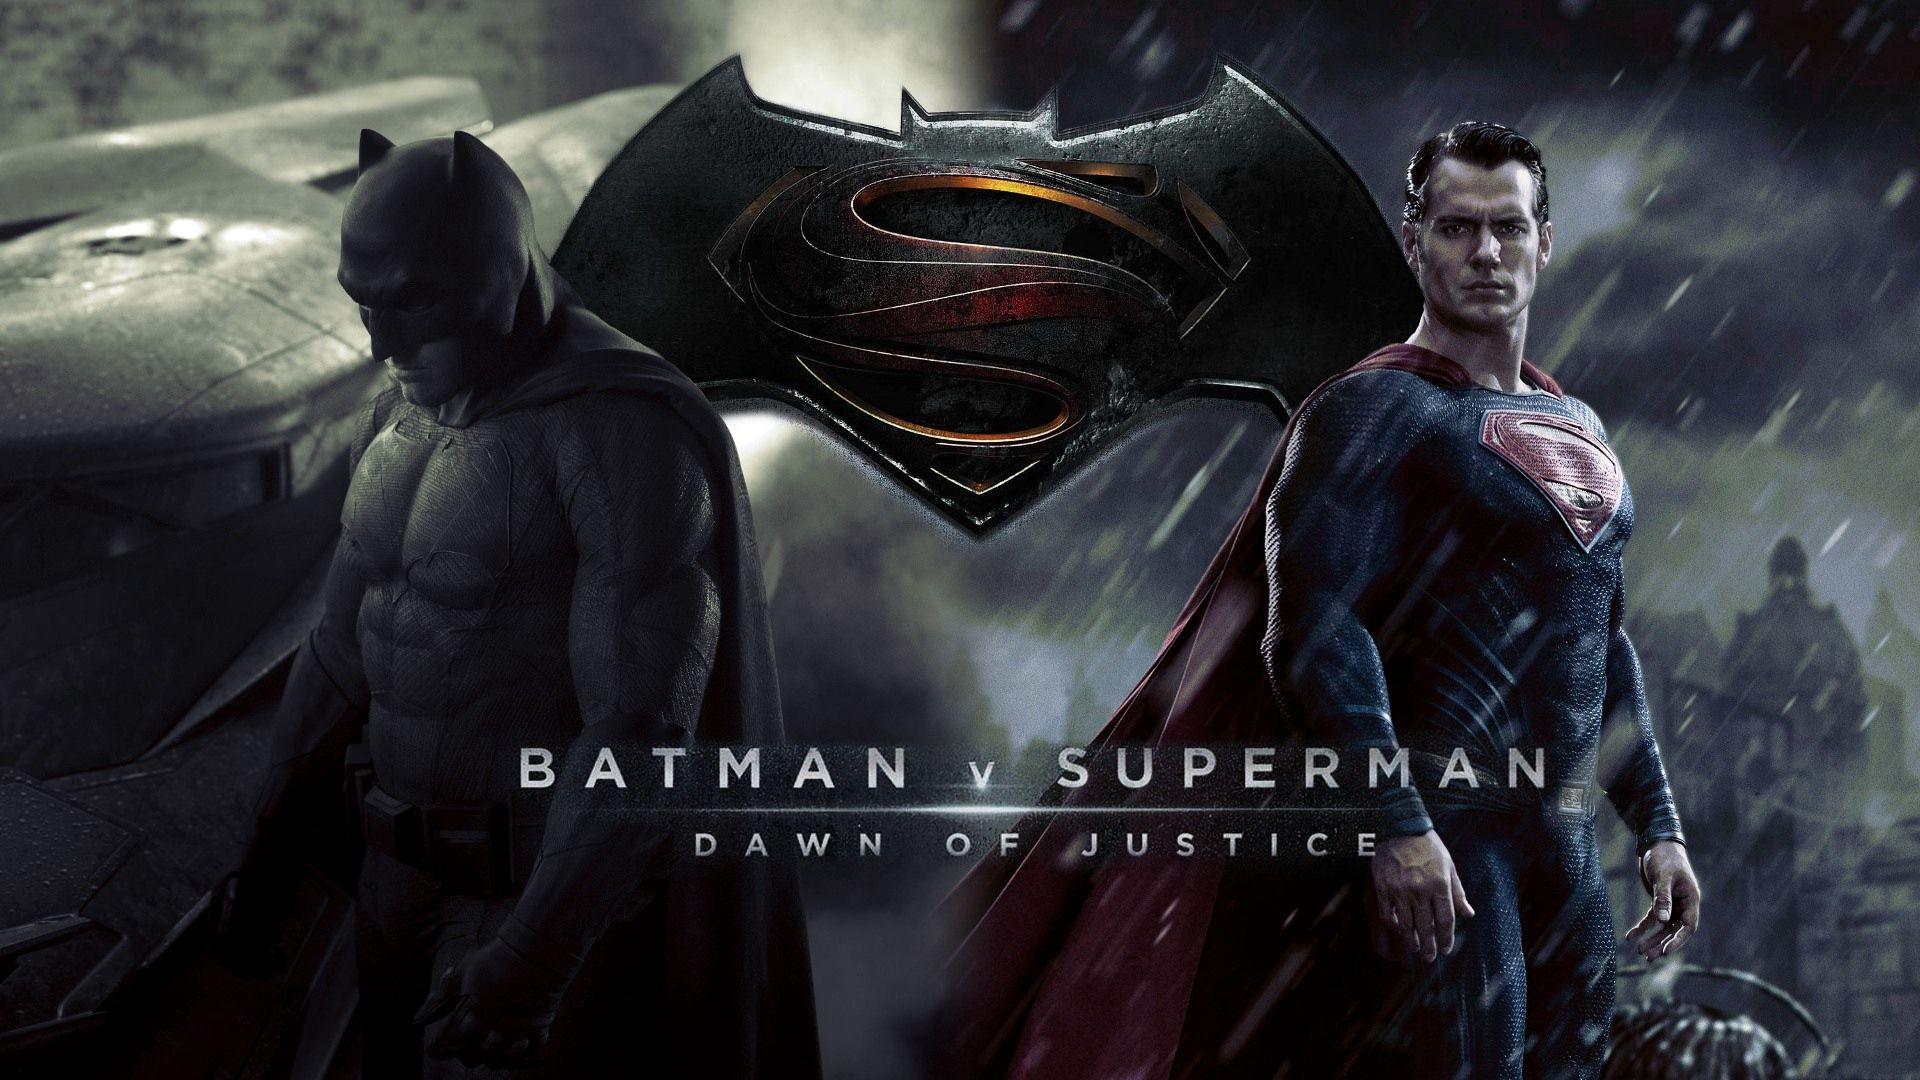 Download wallpaper 1920x1080 batman v superman dawn of justice